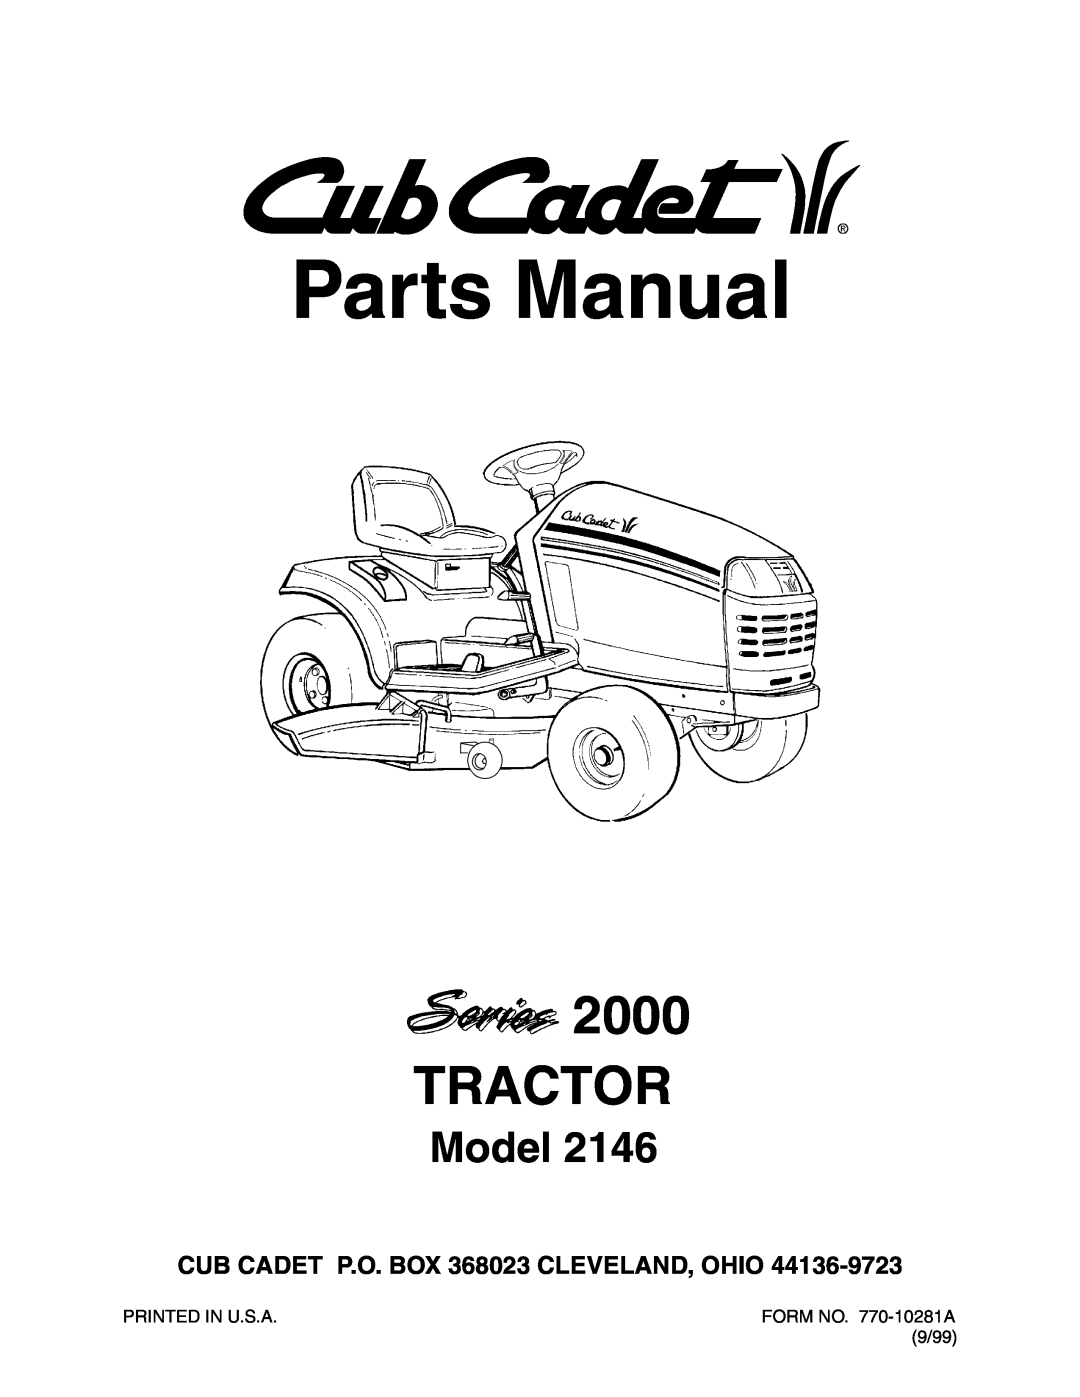 Cub Cadet 2146 manual Parts Manual, Tractor, Model, CUB CADET P.O. BOX 368023 CLEVELAND, OHIO, Printed In U.S.A, 9/99 